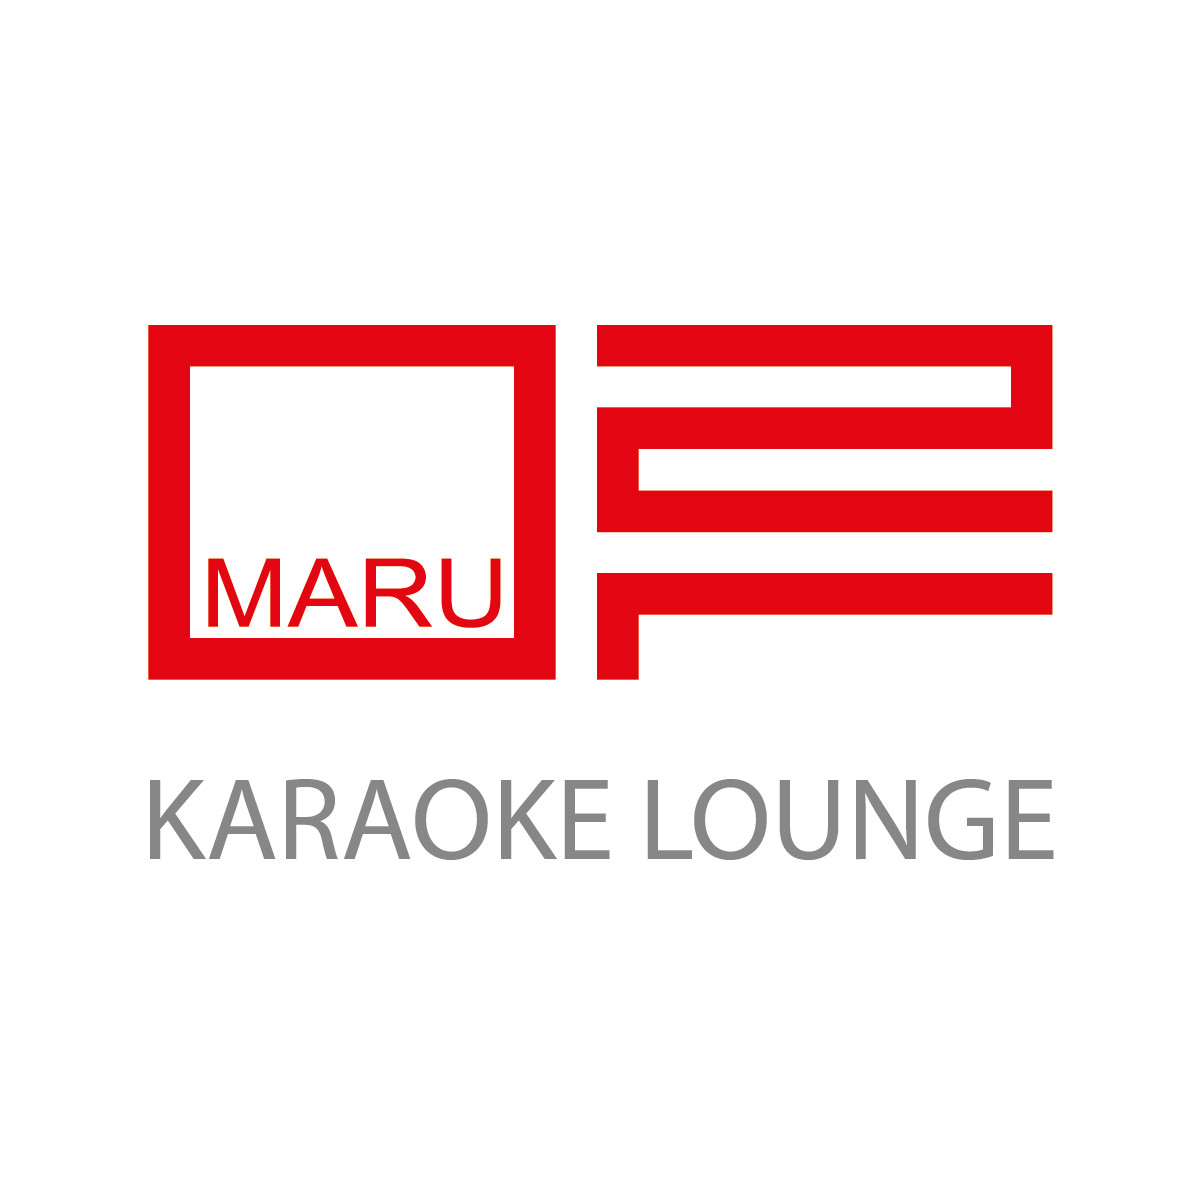 Trendy Karaoke Rooms and Bars in NYC | Maru Karaoke Lounge